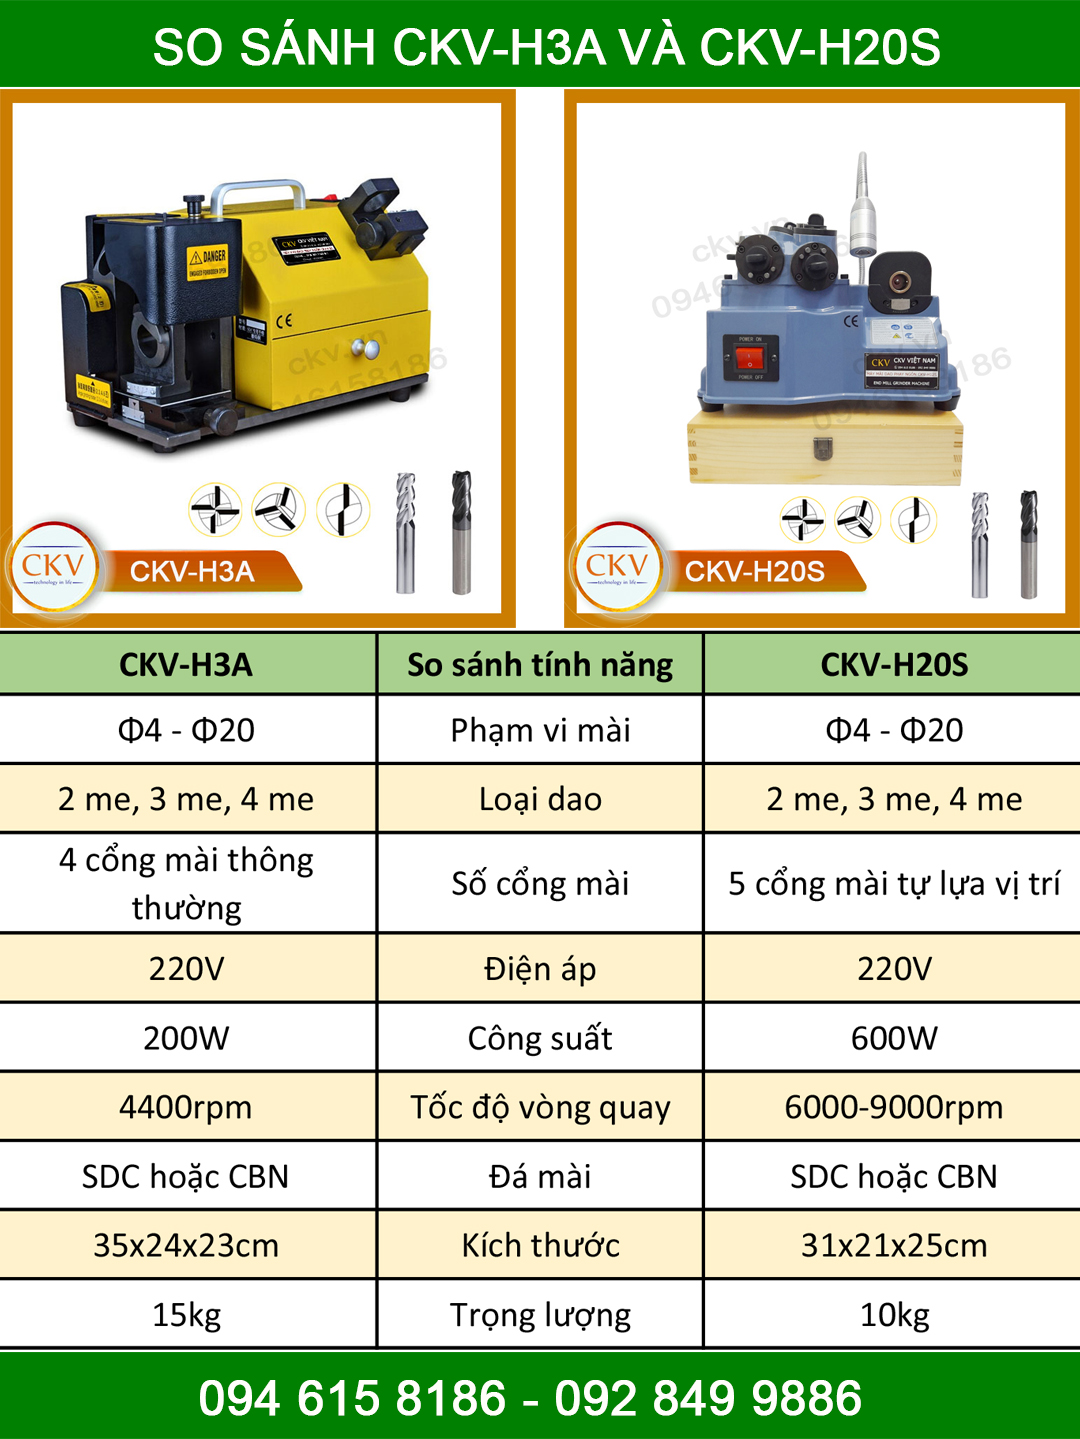 So sánh CKV-H3A và CKV-H20S